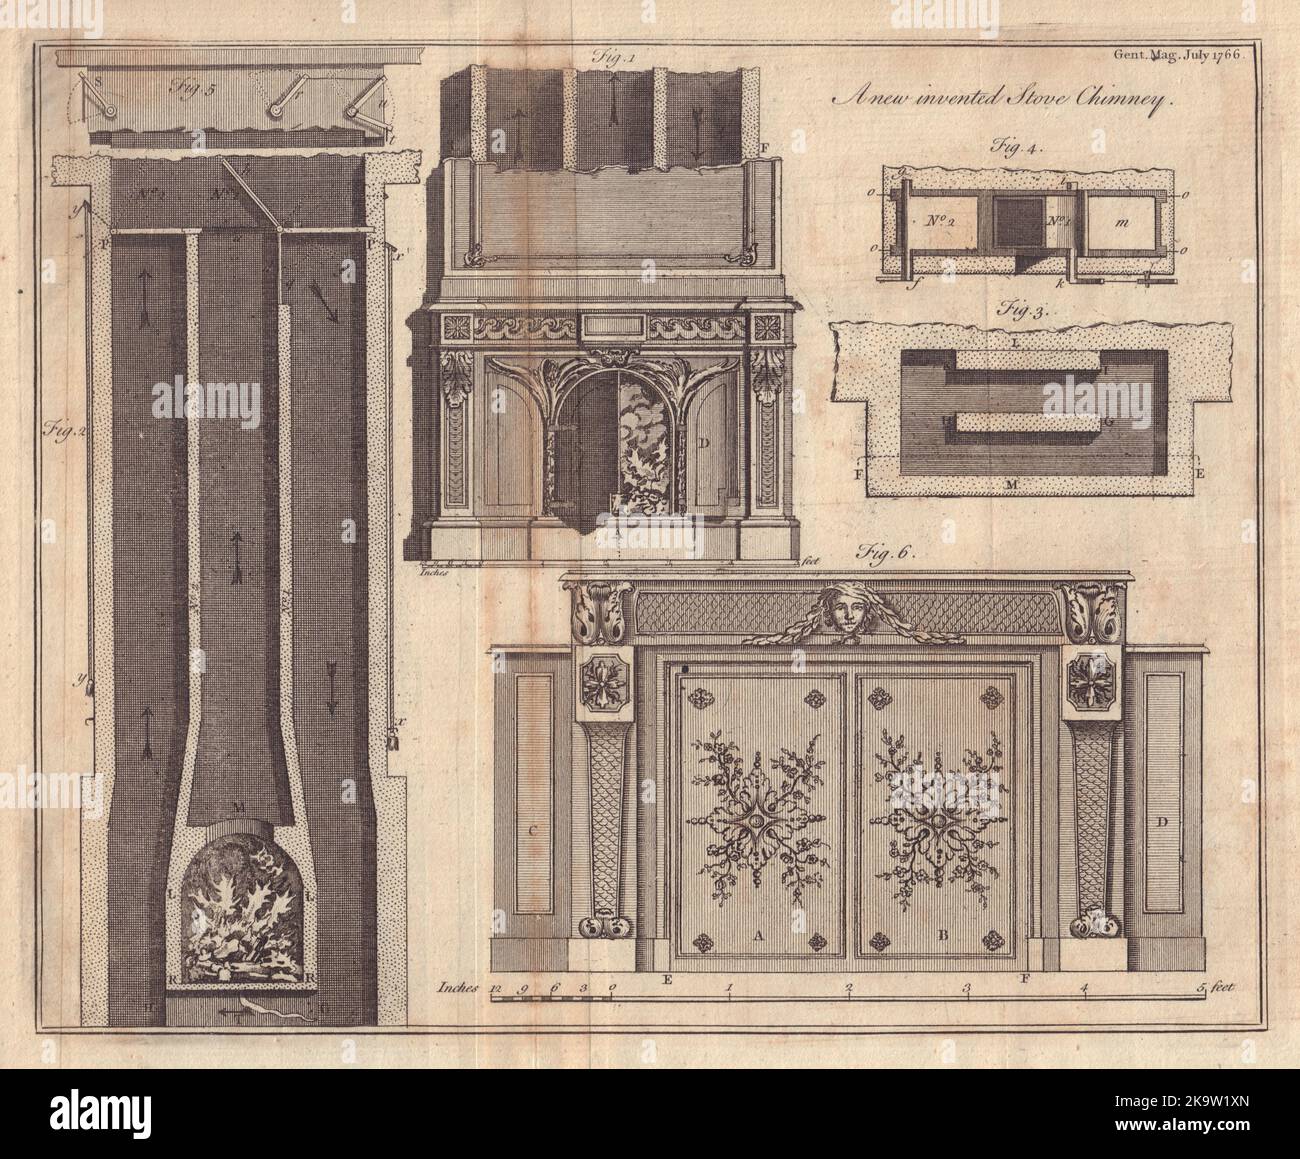 Un nuovo inventato stufa Chimney da Montalembert. Decorativo. GENTS MAG 1766 stampa Foto Stock